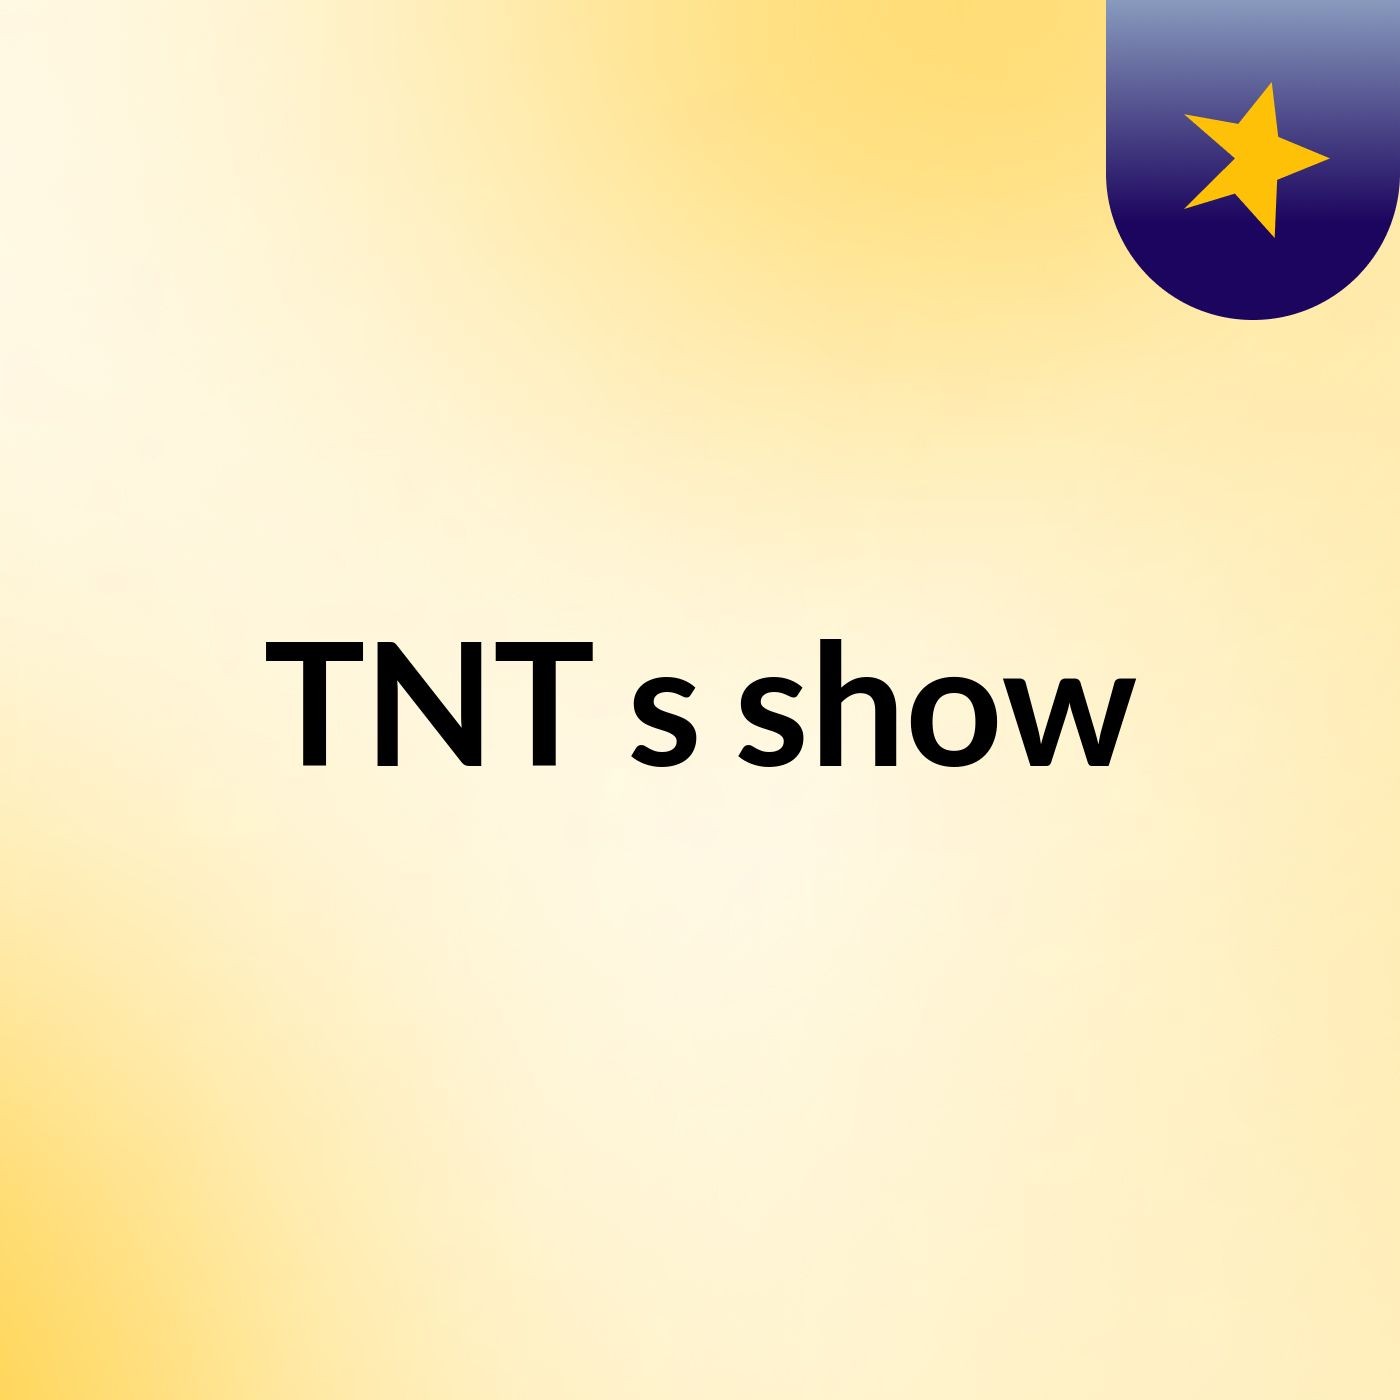 TNT's show